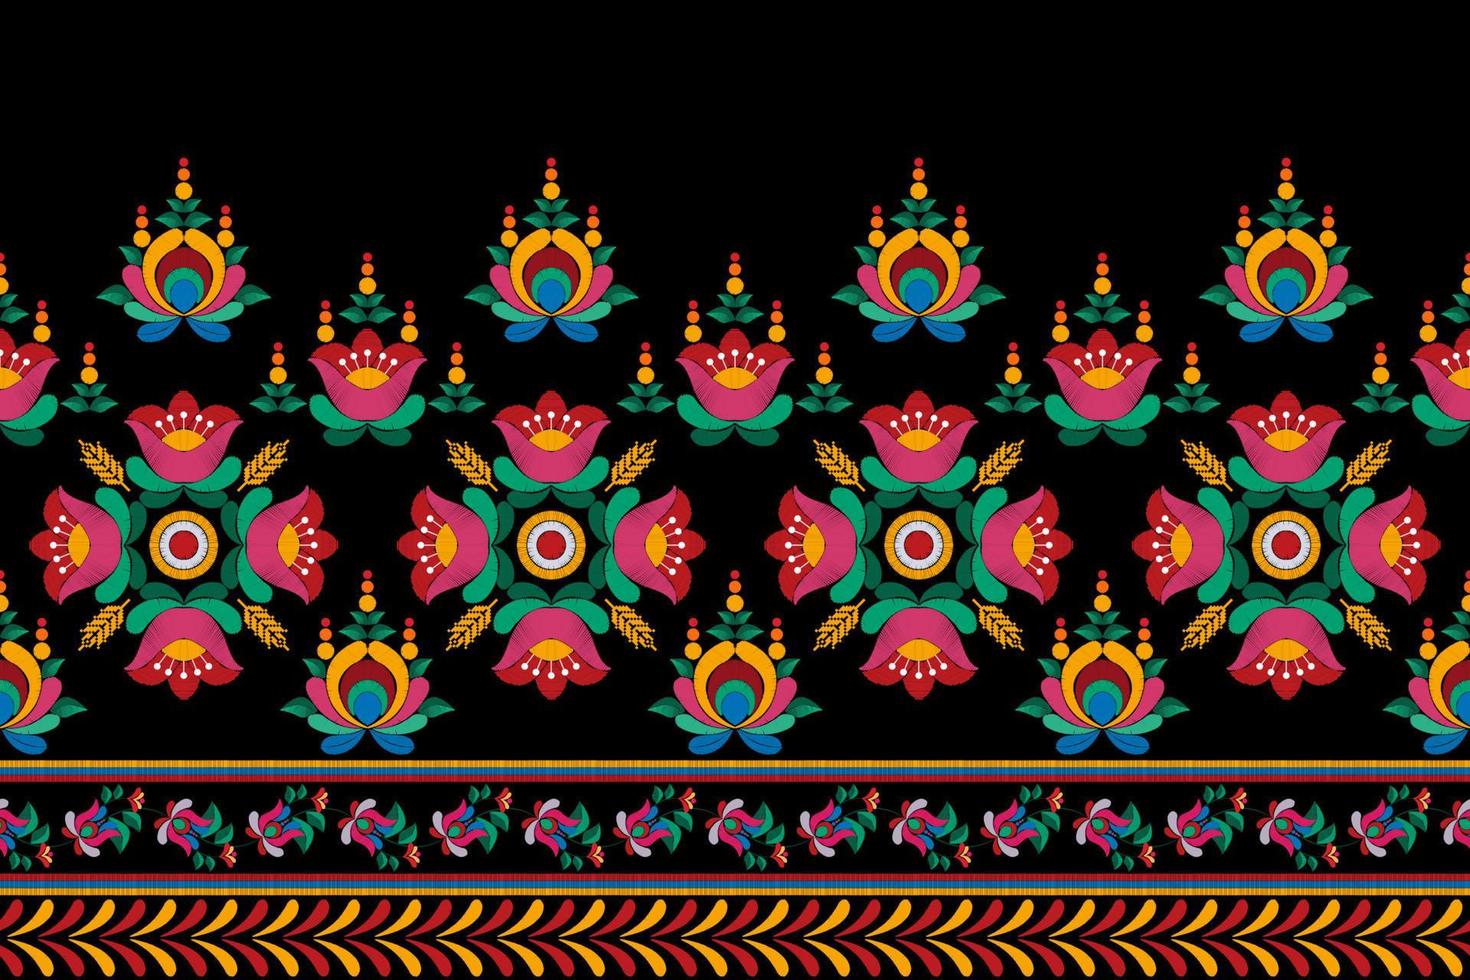 conception de décoration de modèle ethnique sans couture ikat. tapis en tissu aztèque boho mandalas textile décor papier peint. motif indigène tribal ornements de fleurs broderie traditionnelle vecteur illustré arrière-plan